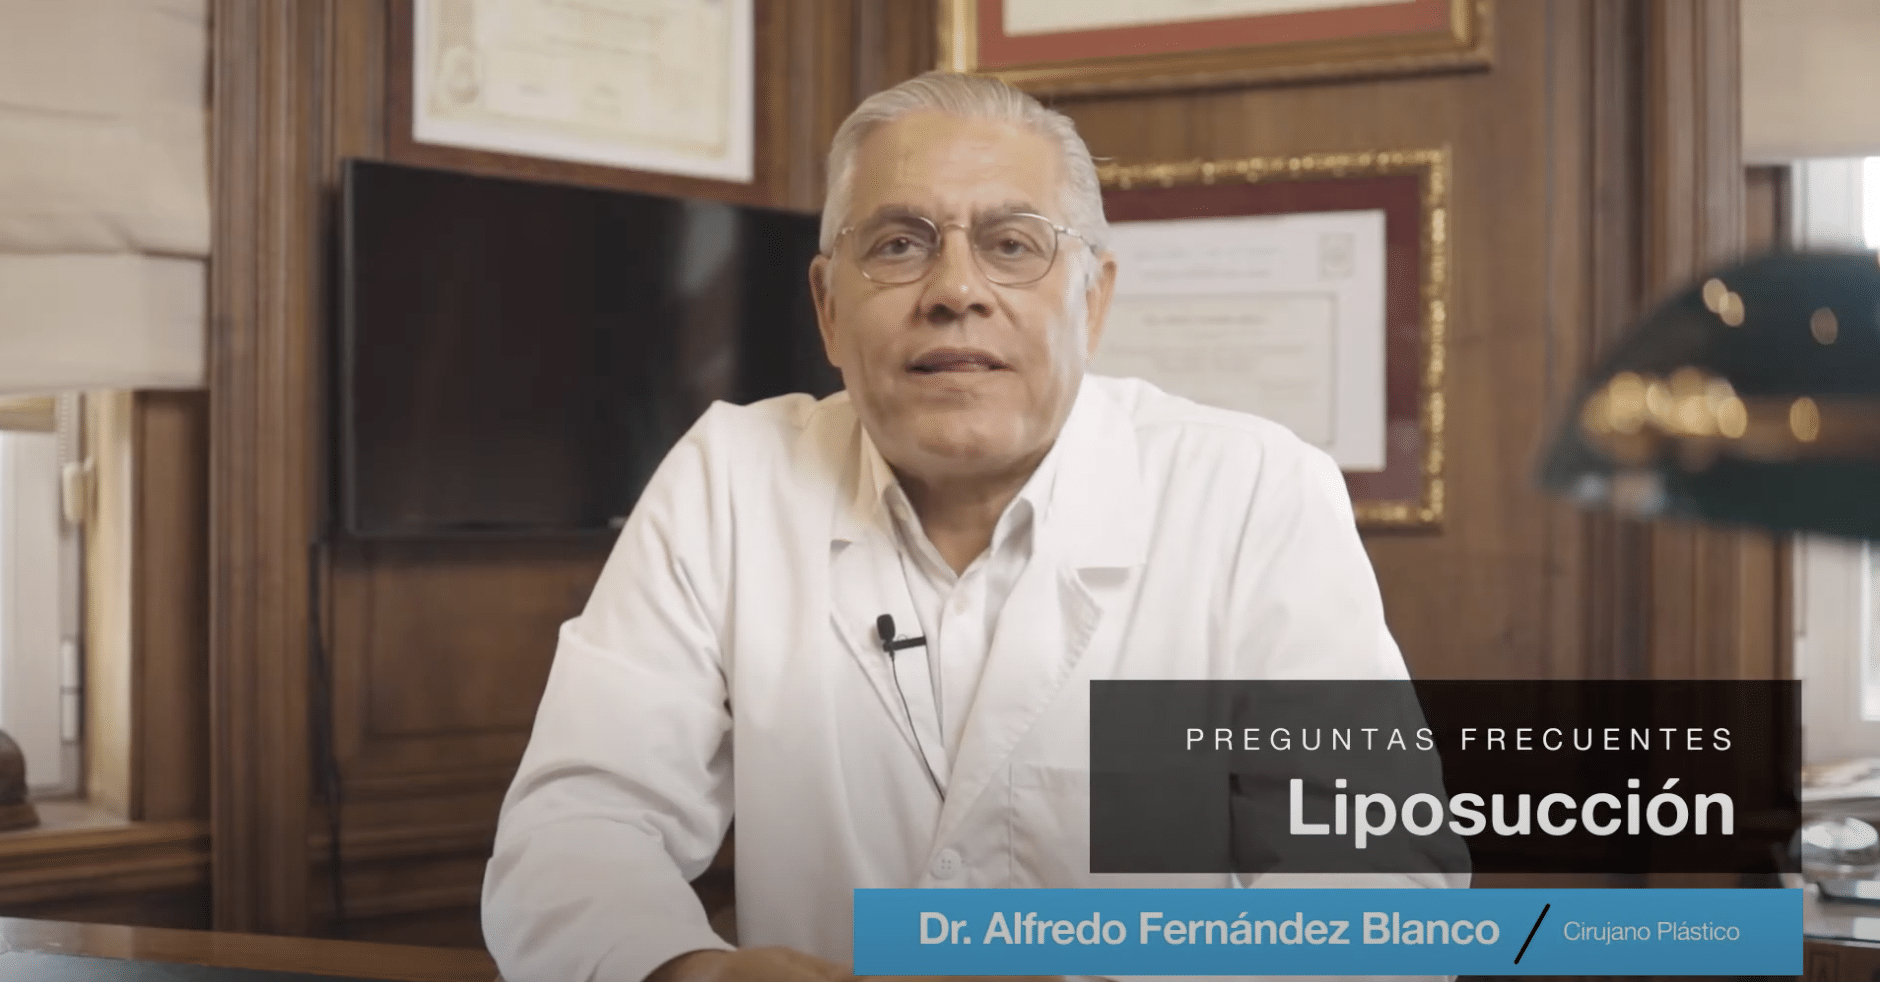 Videoblog del Dr. Fernández Blanco sobre la liposucción